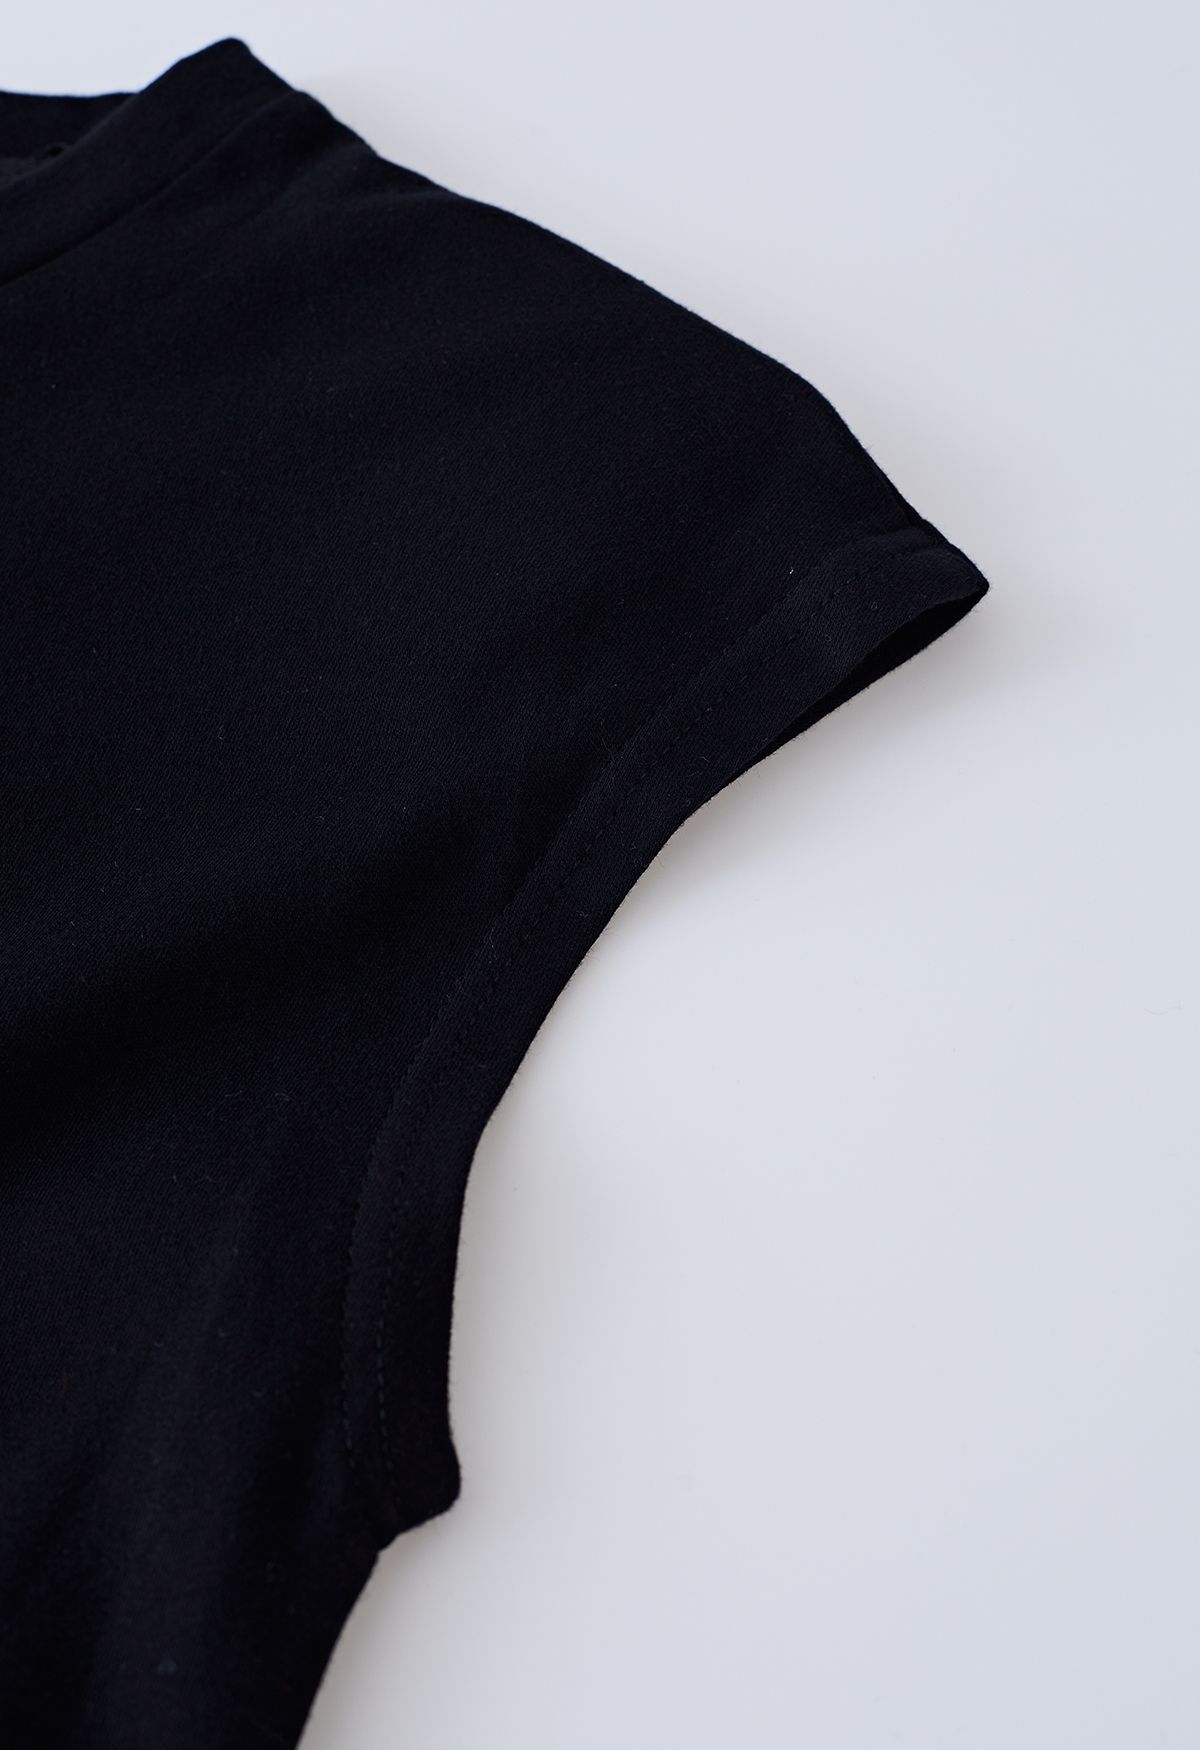 Crisscross Waist Sleeveless Cotton Top in Black